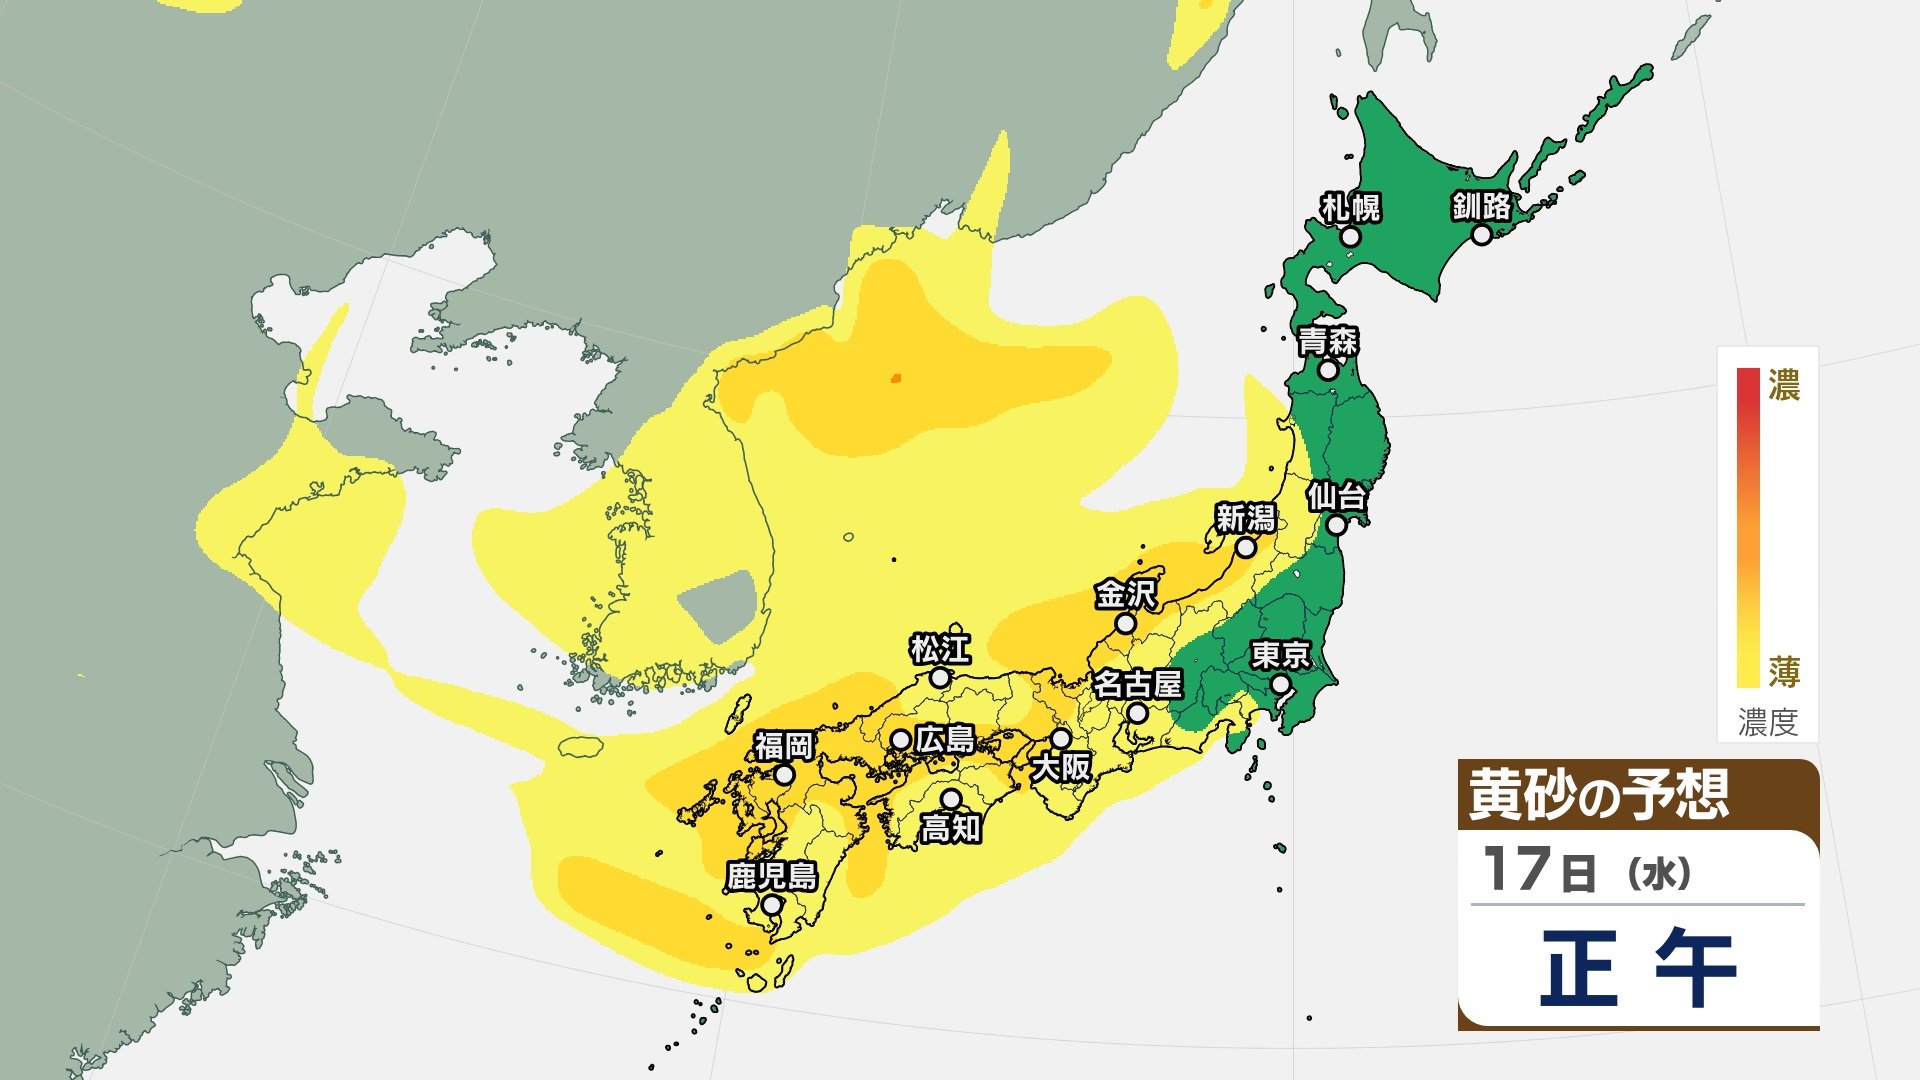 【黄砂予想】18日にかけて北日本～西日本に黄砂飛来へ…見通しは10キロ未満に 気象庁「黄砂に関する全般気象情報」